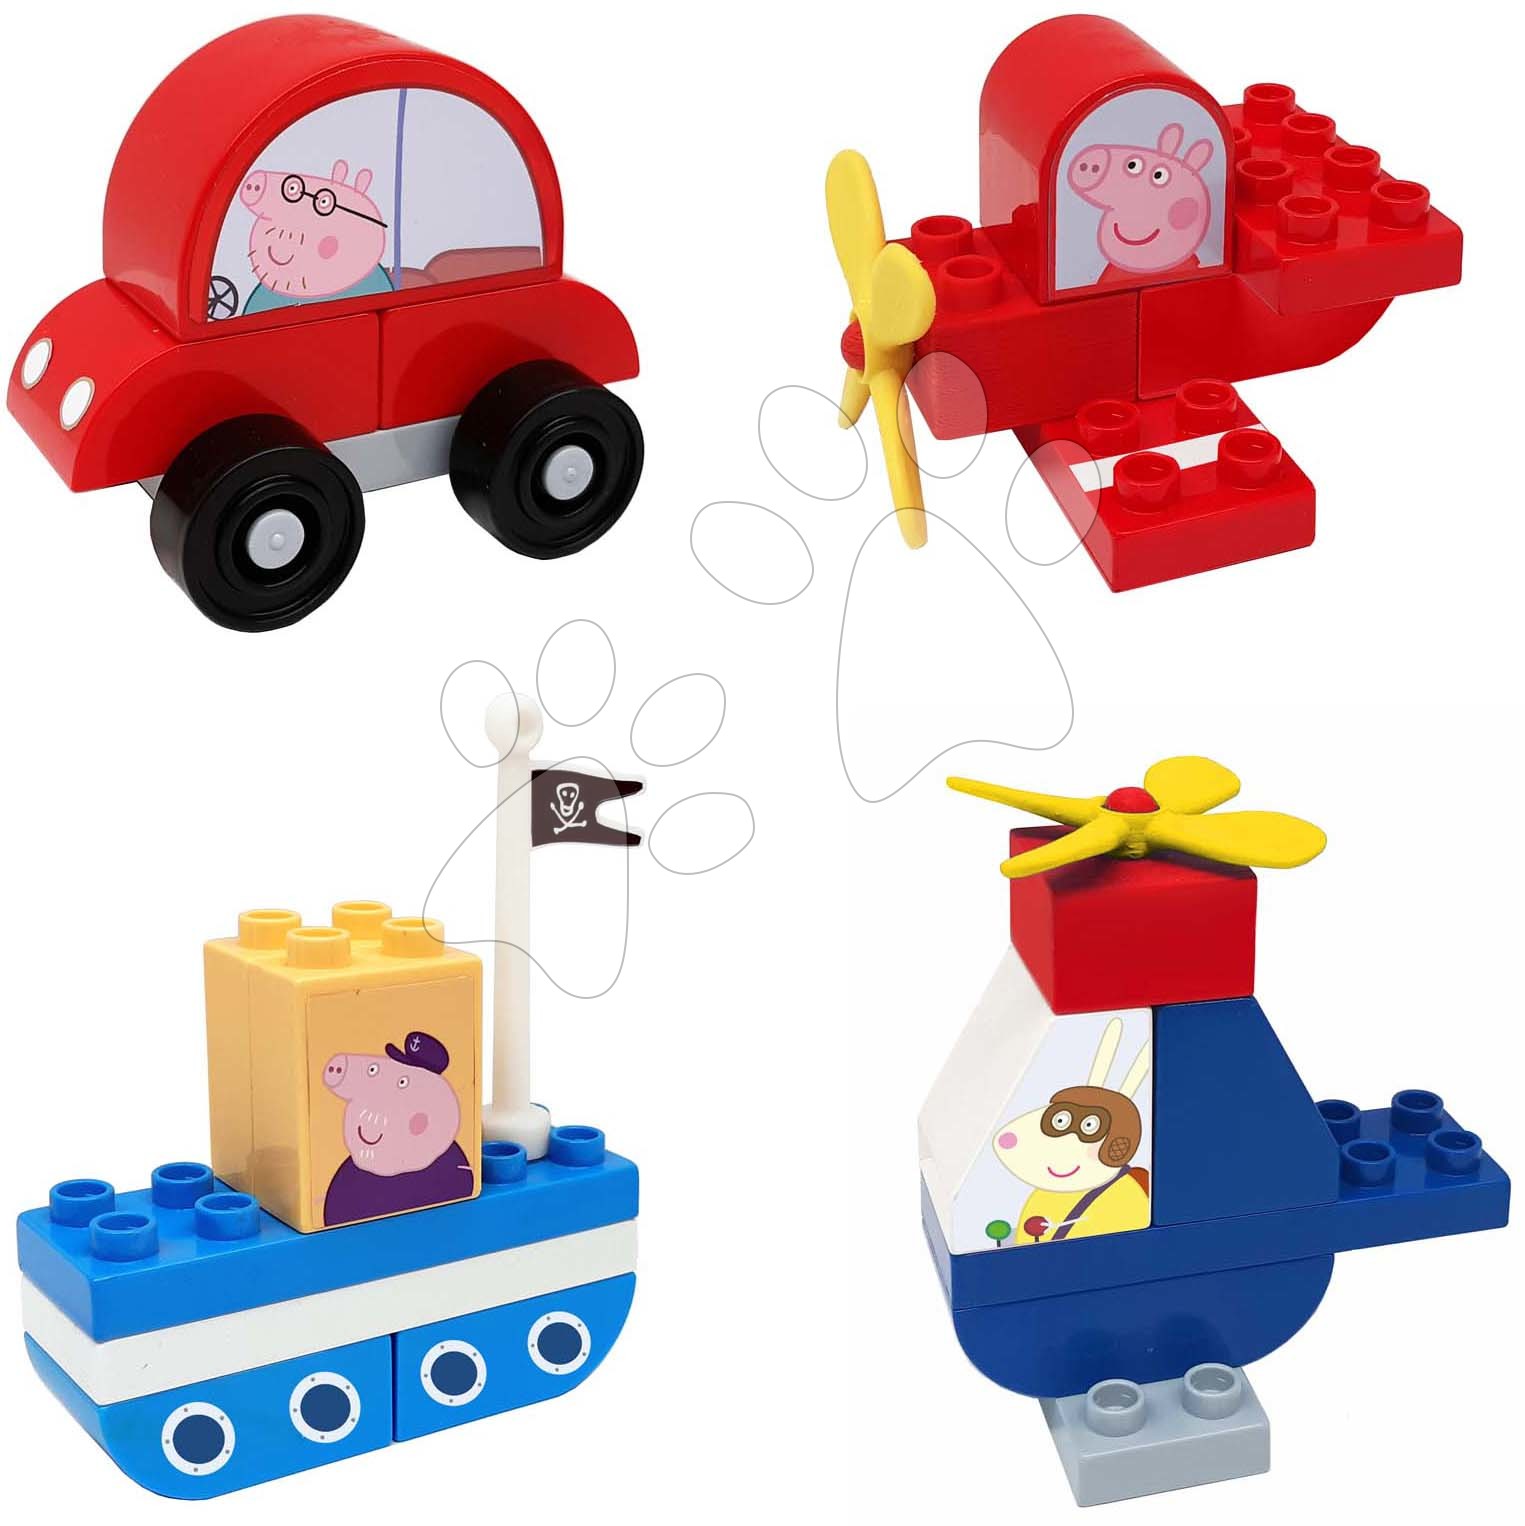 Stavebnice BIG-Bloxx jako lego - Stavebnice Peppa Pig Vehicles Set PlayBig Bloxx BIG souprava 4 dopravních prostředků 24 dílů od 1,5-5 let